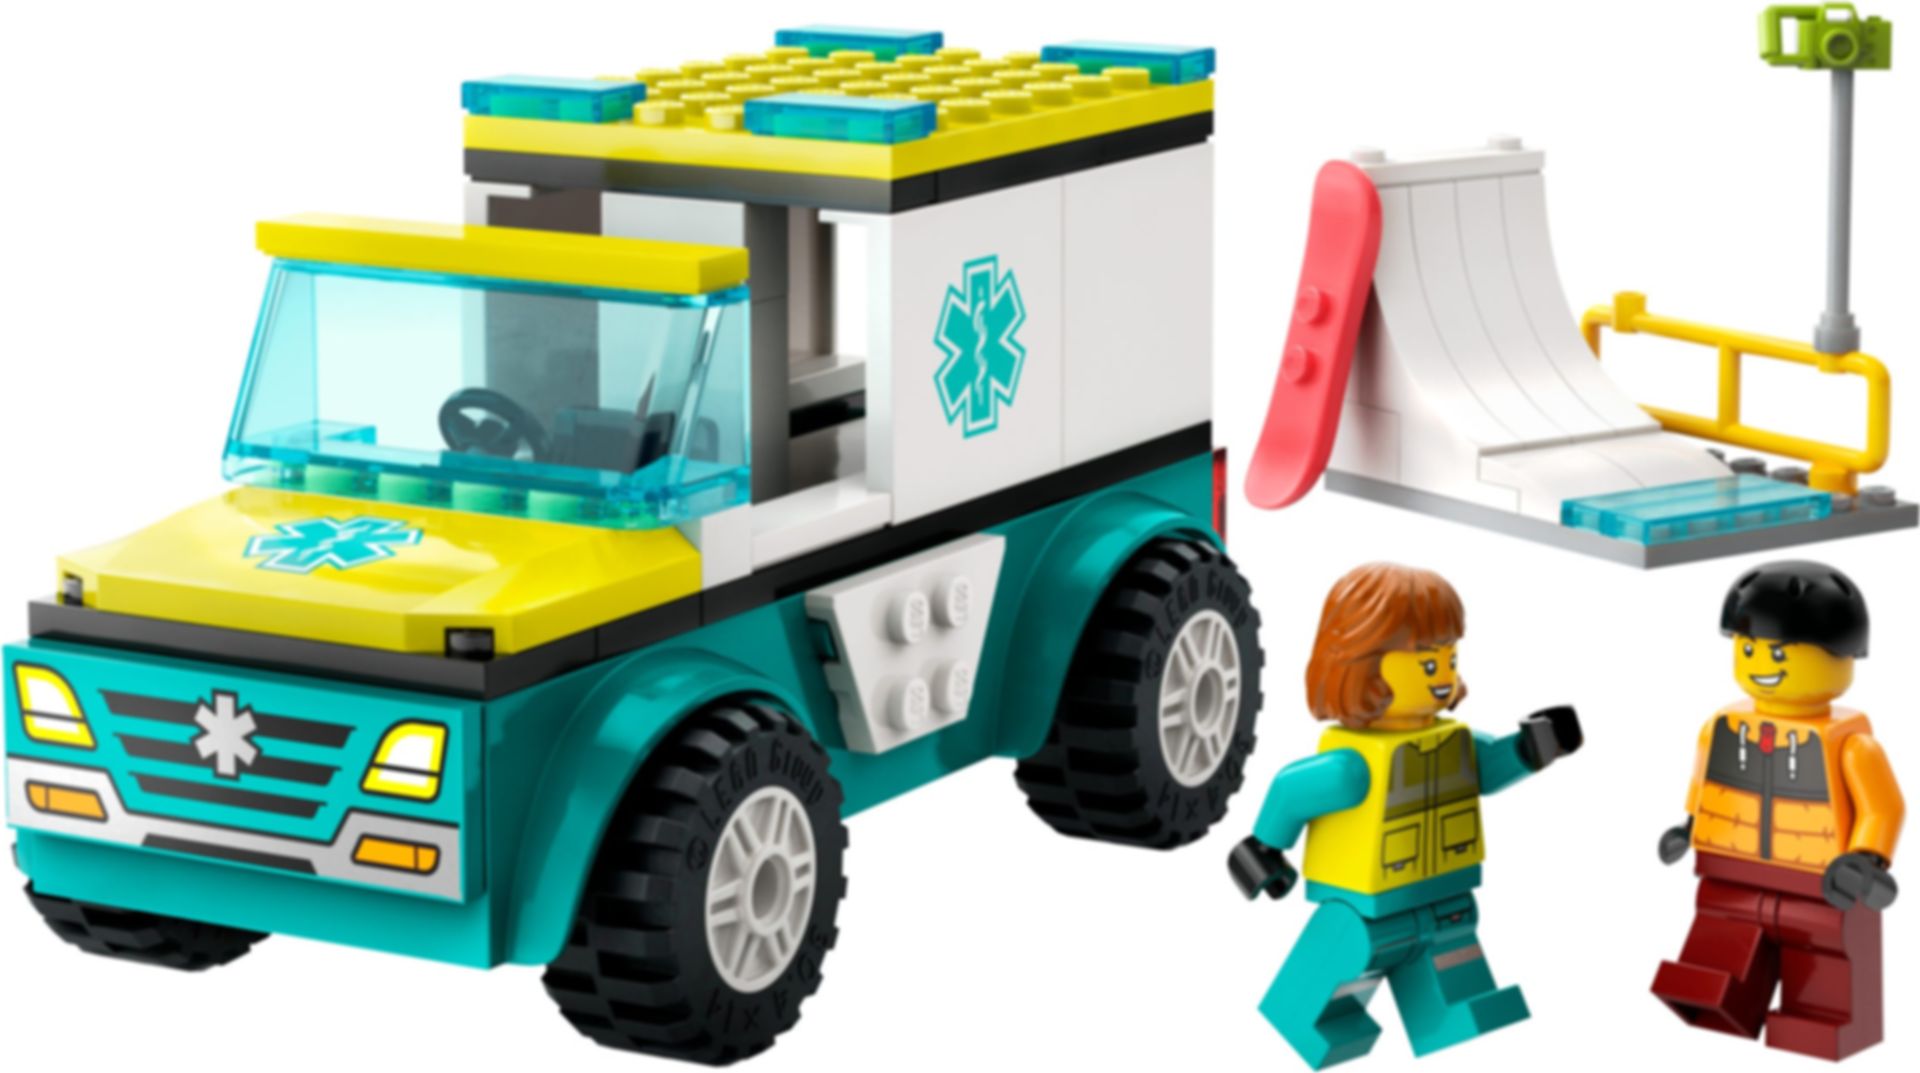 LEGO® City Rettungswagen und Snowboarder komponenten